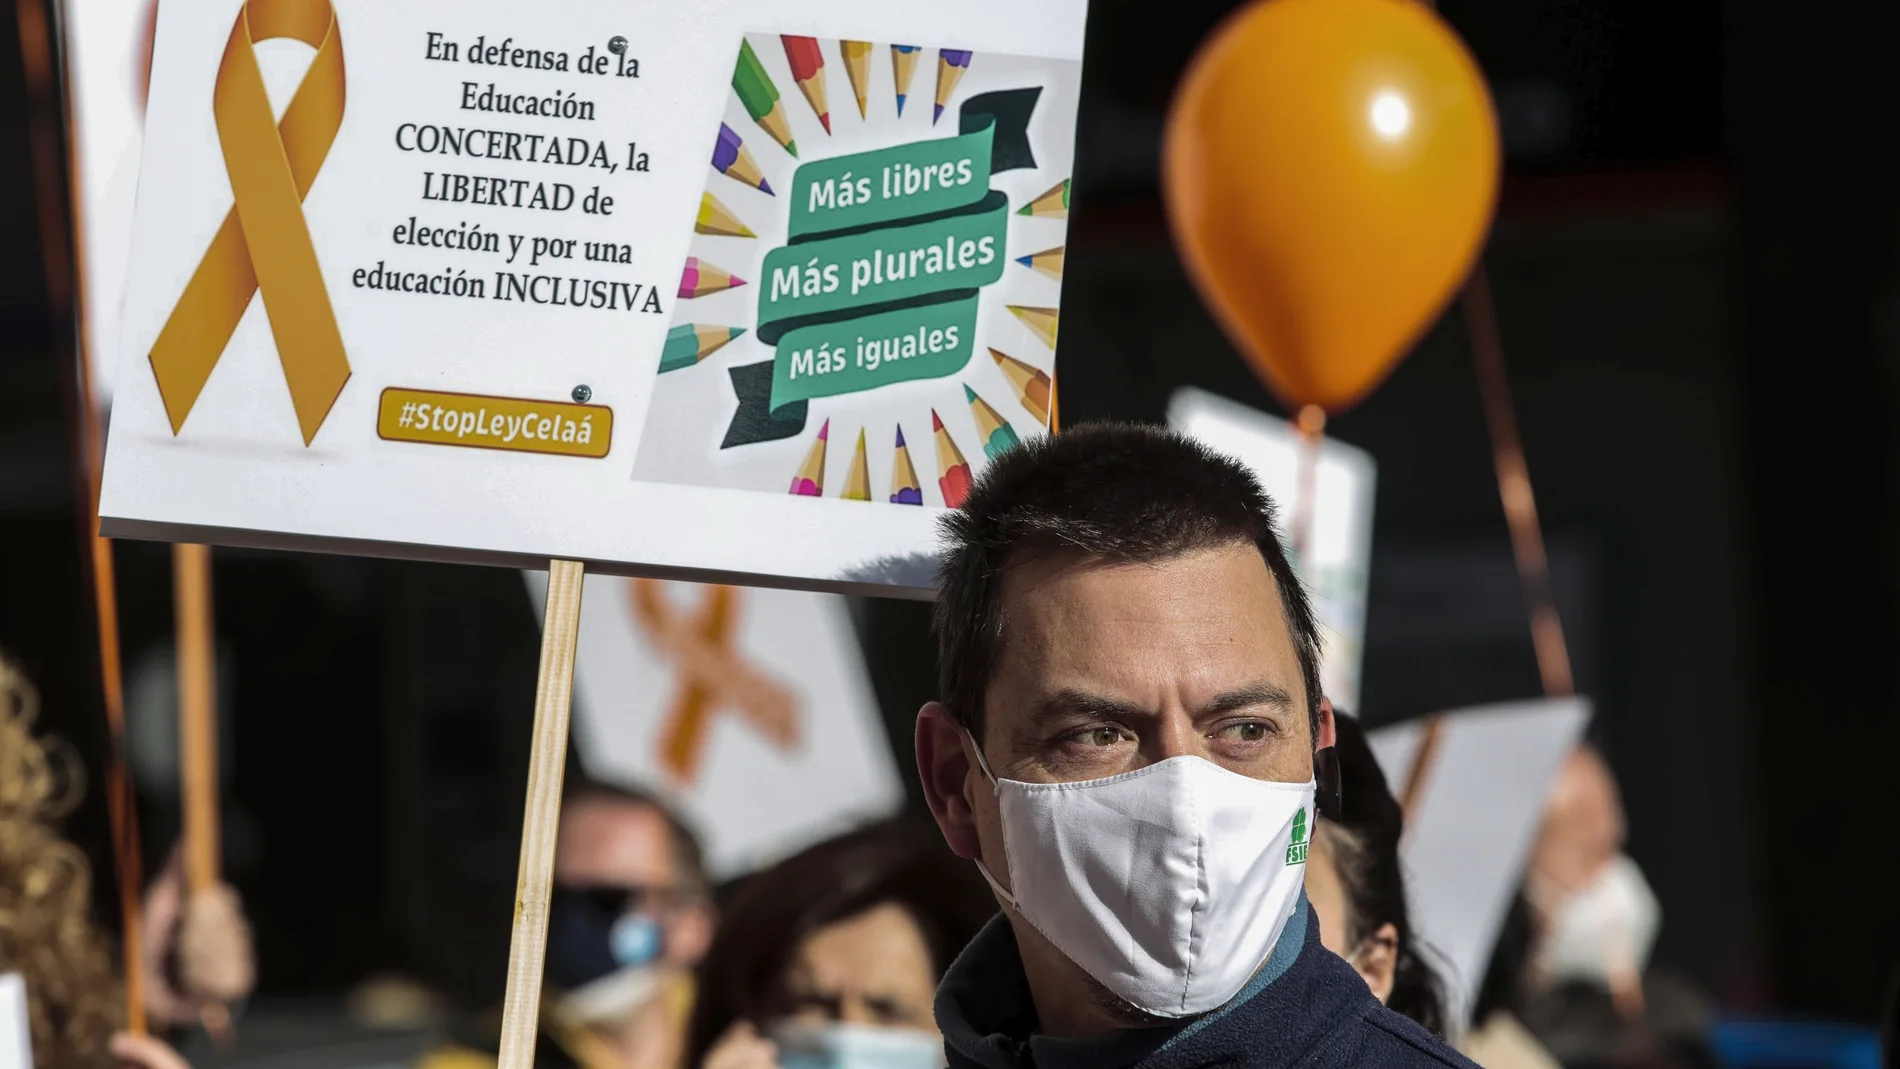 Concentración frente a la subdelegación del Gobierno en León convocada por la Plataforma Más Plurales para mostrar su rechazo a la Ley Celaá